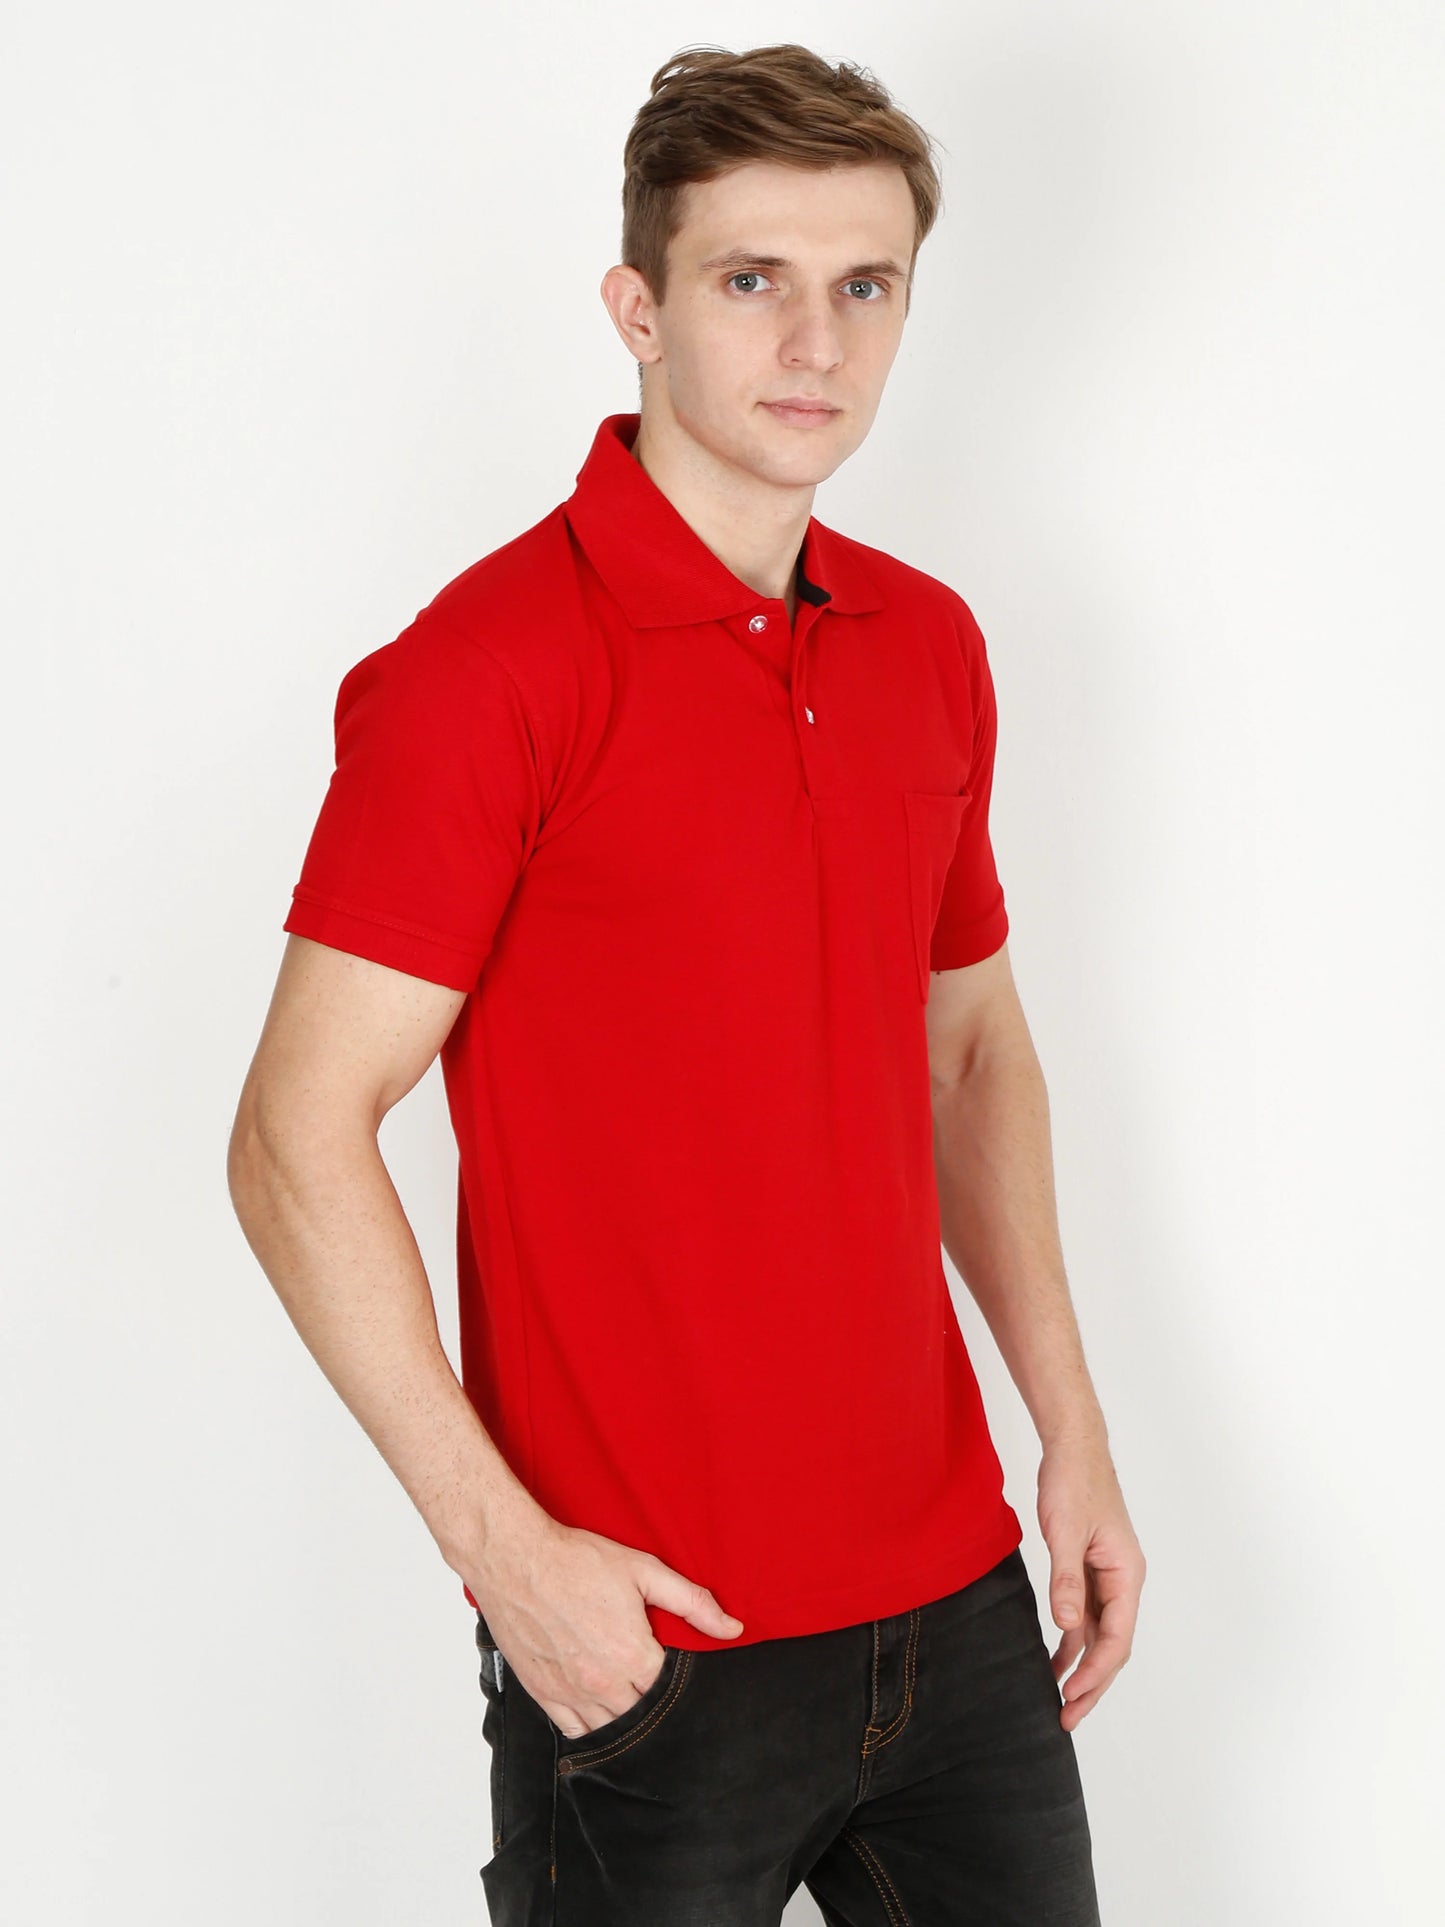 Men's Cotton Plain Polo Neck Half Sleeve Red Color T-Shirt